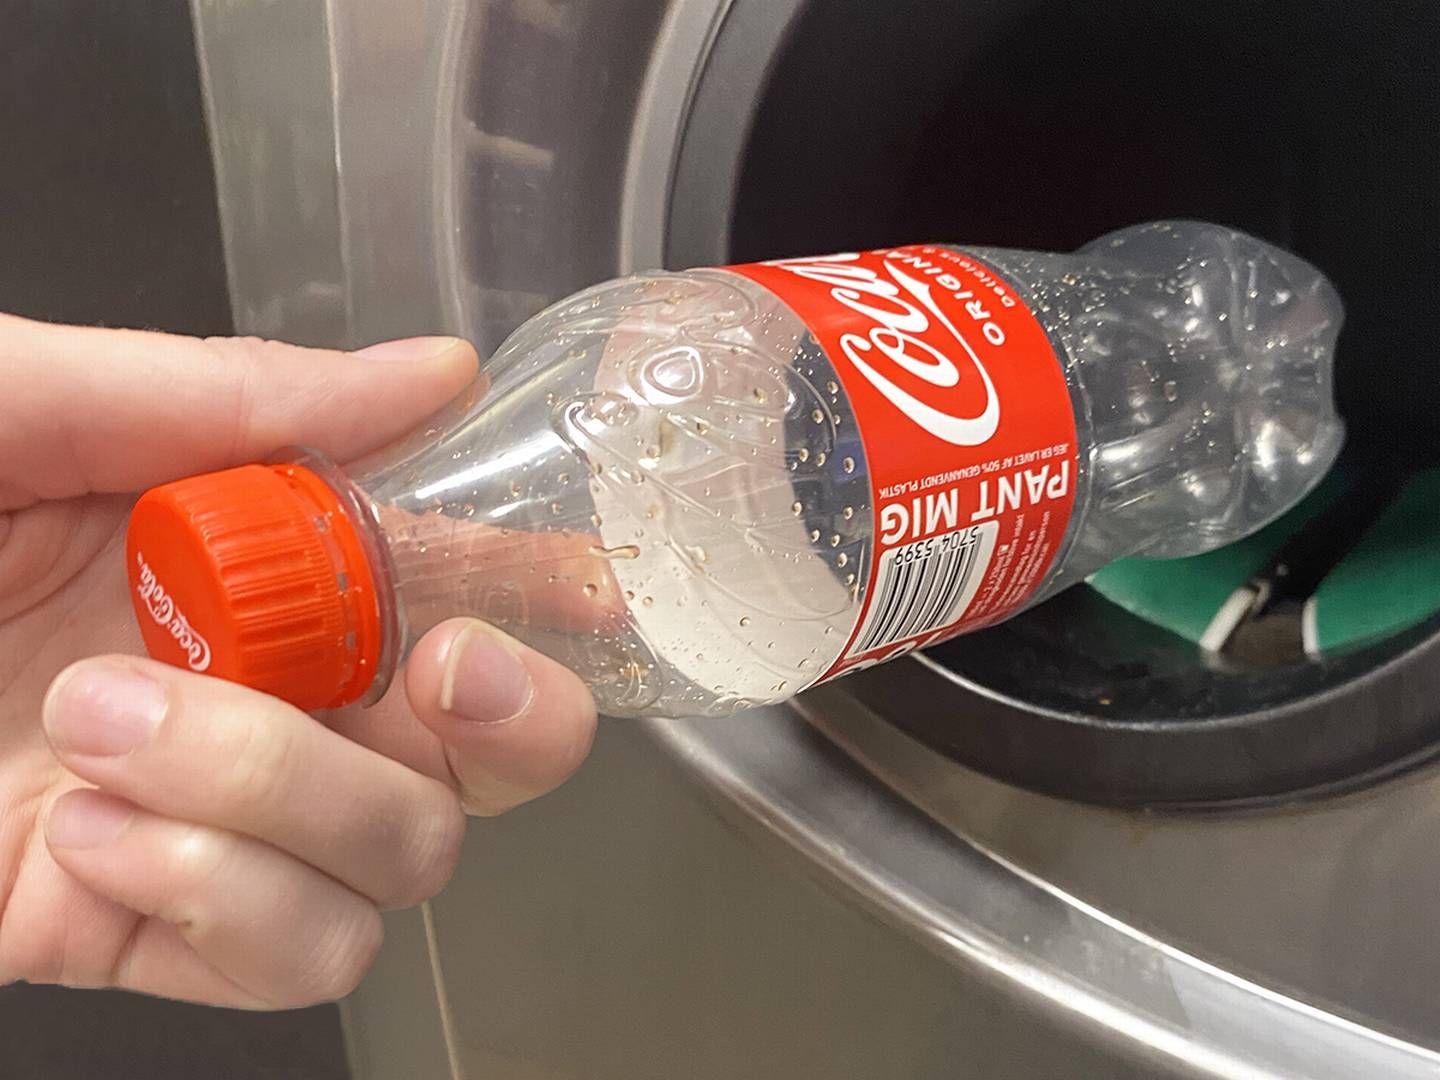 Dansk Retursystem lancerer en kampagne, der skal få forbrugerne til at acceptere, at skruelåget skal blive hængende på flasken, så det ikke ender i naturen. | Foto: Coca-cola Pr